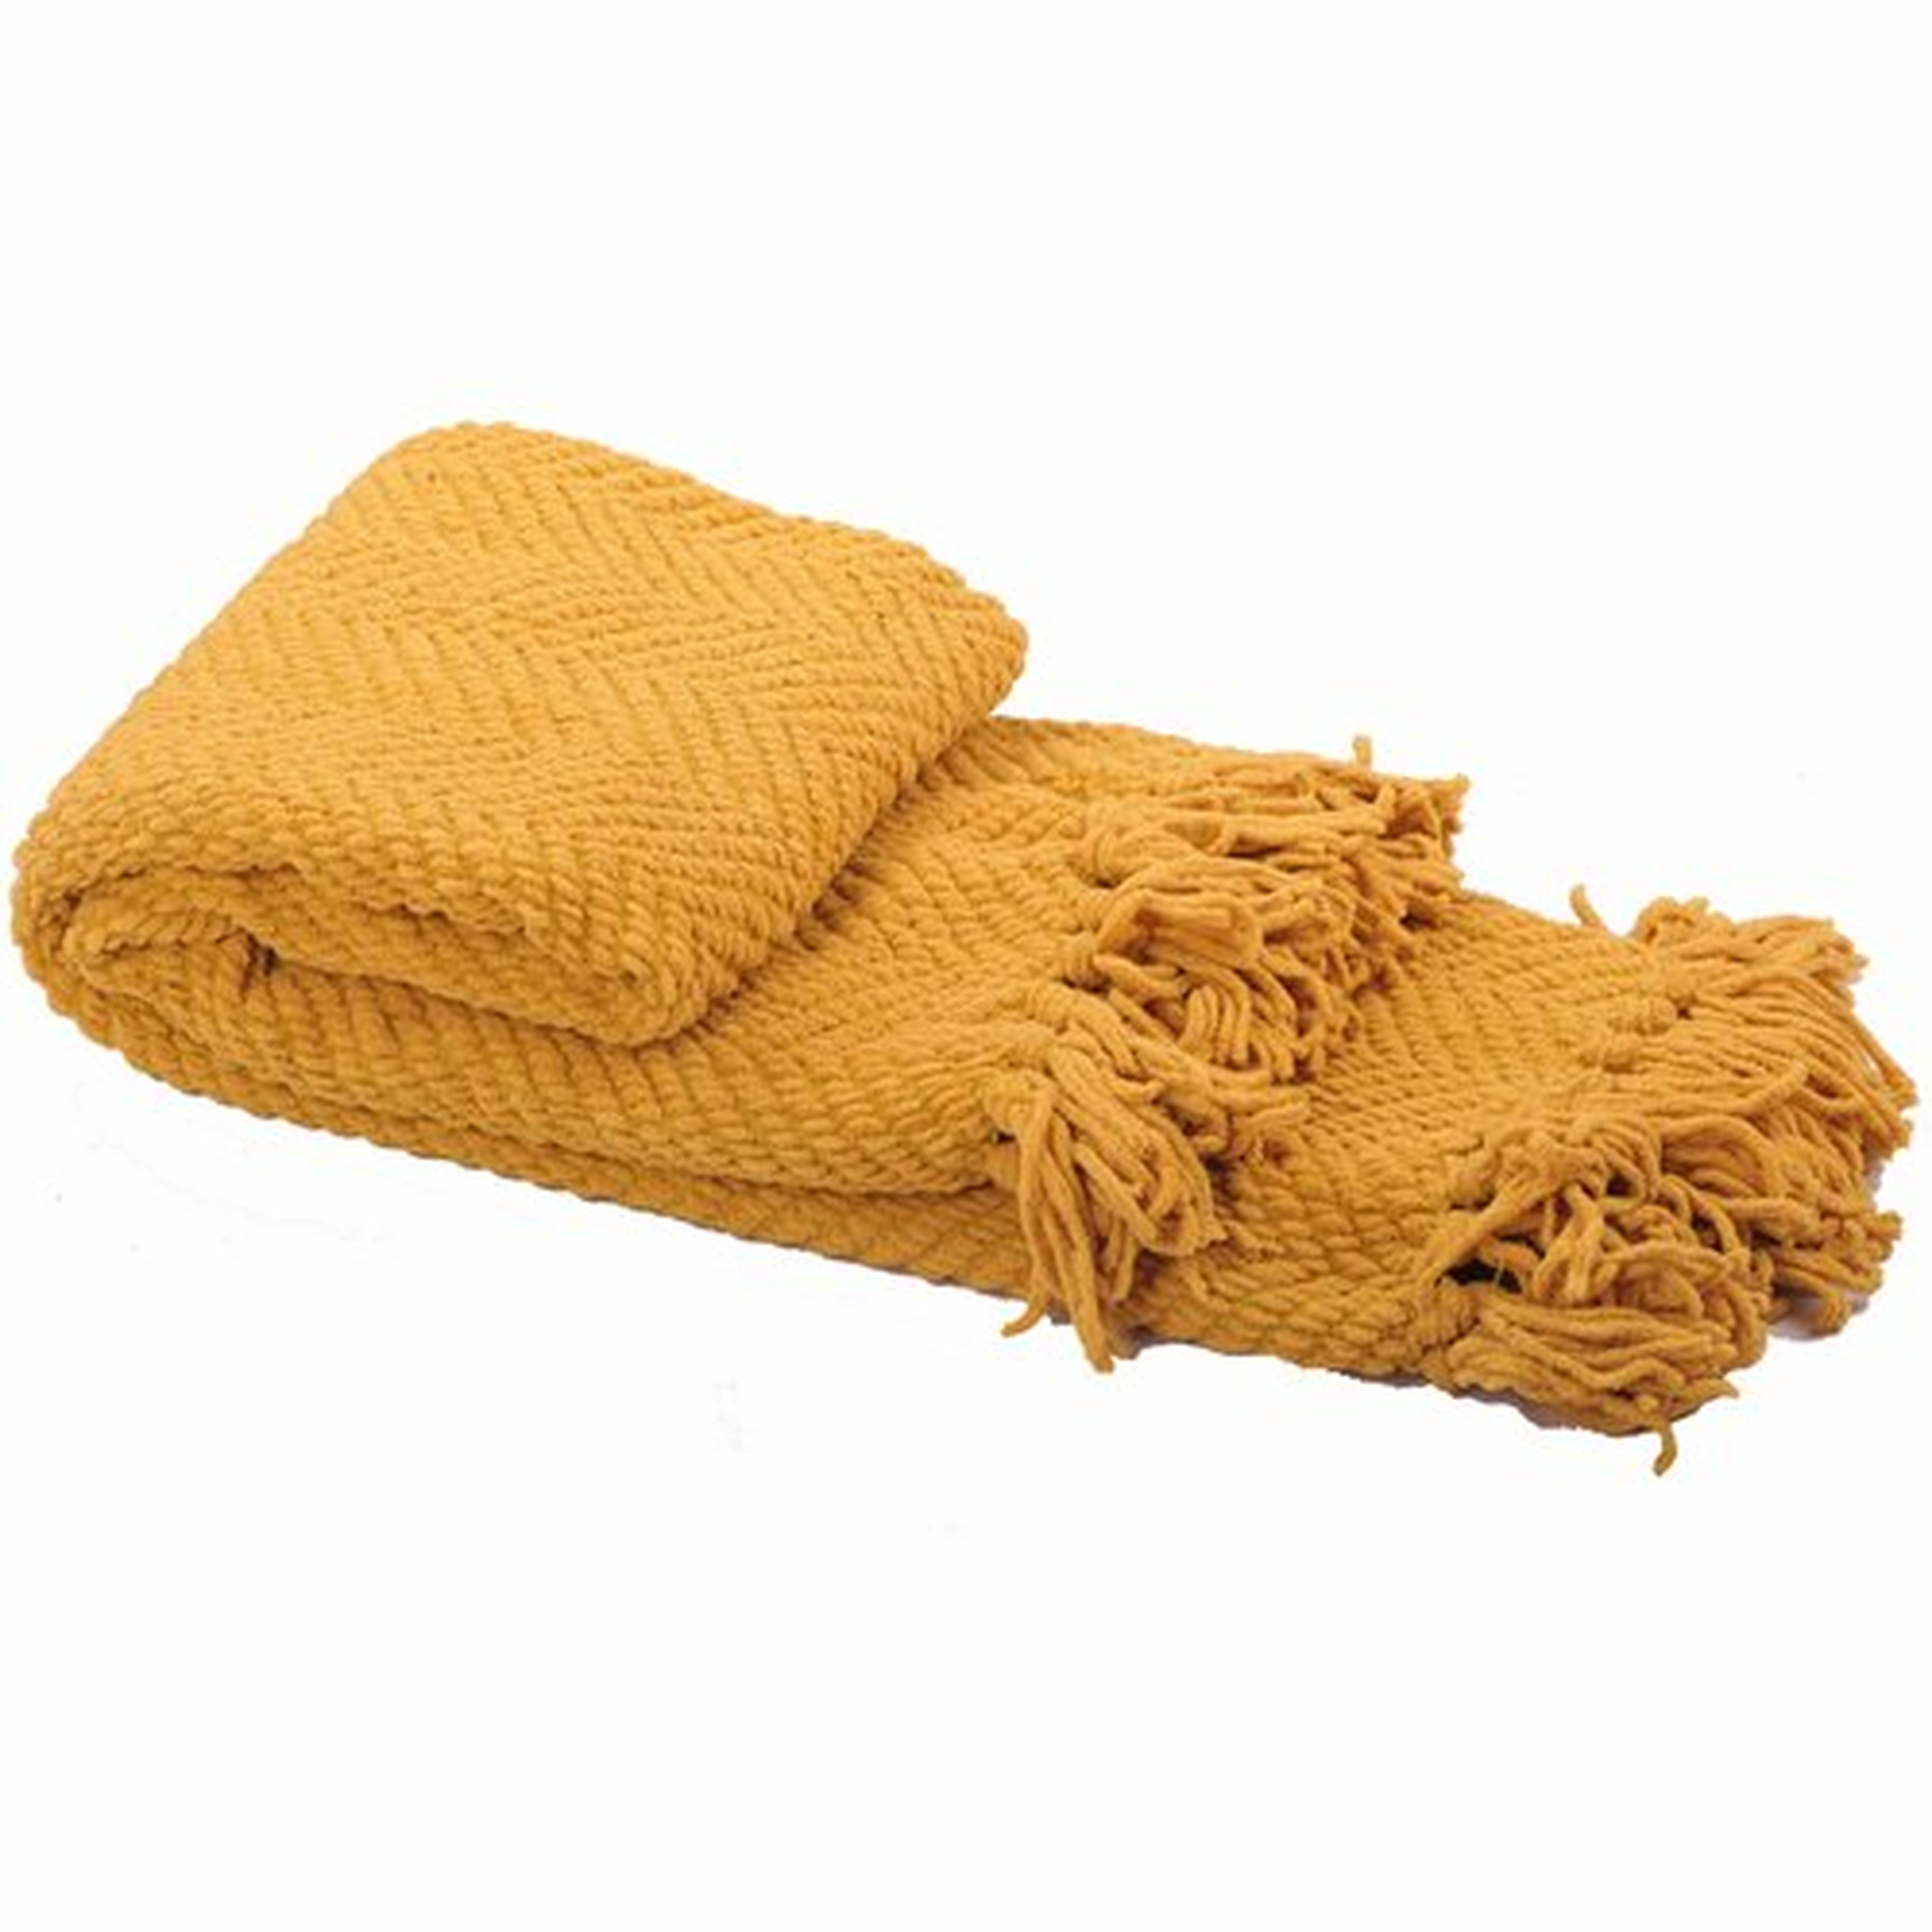 Nader Tweed Knitted-Design Throw, Lemon Curry - Wayfair